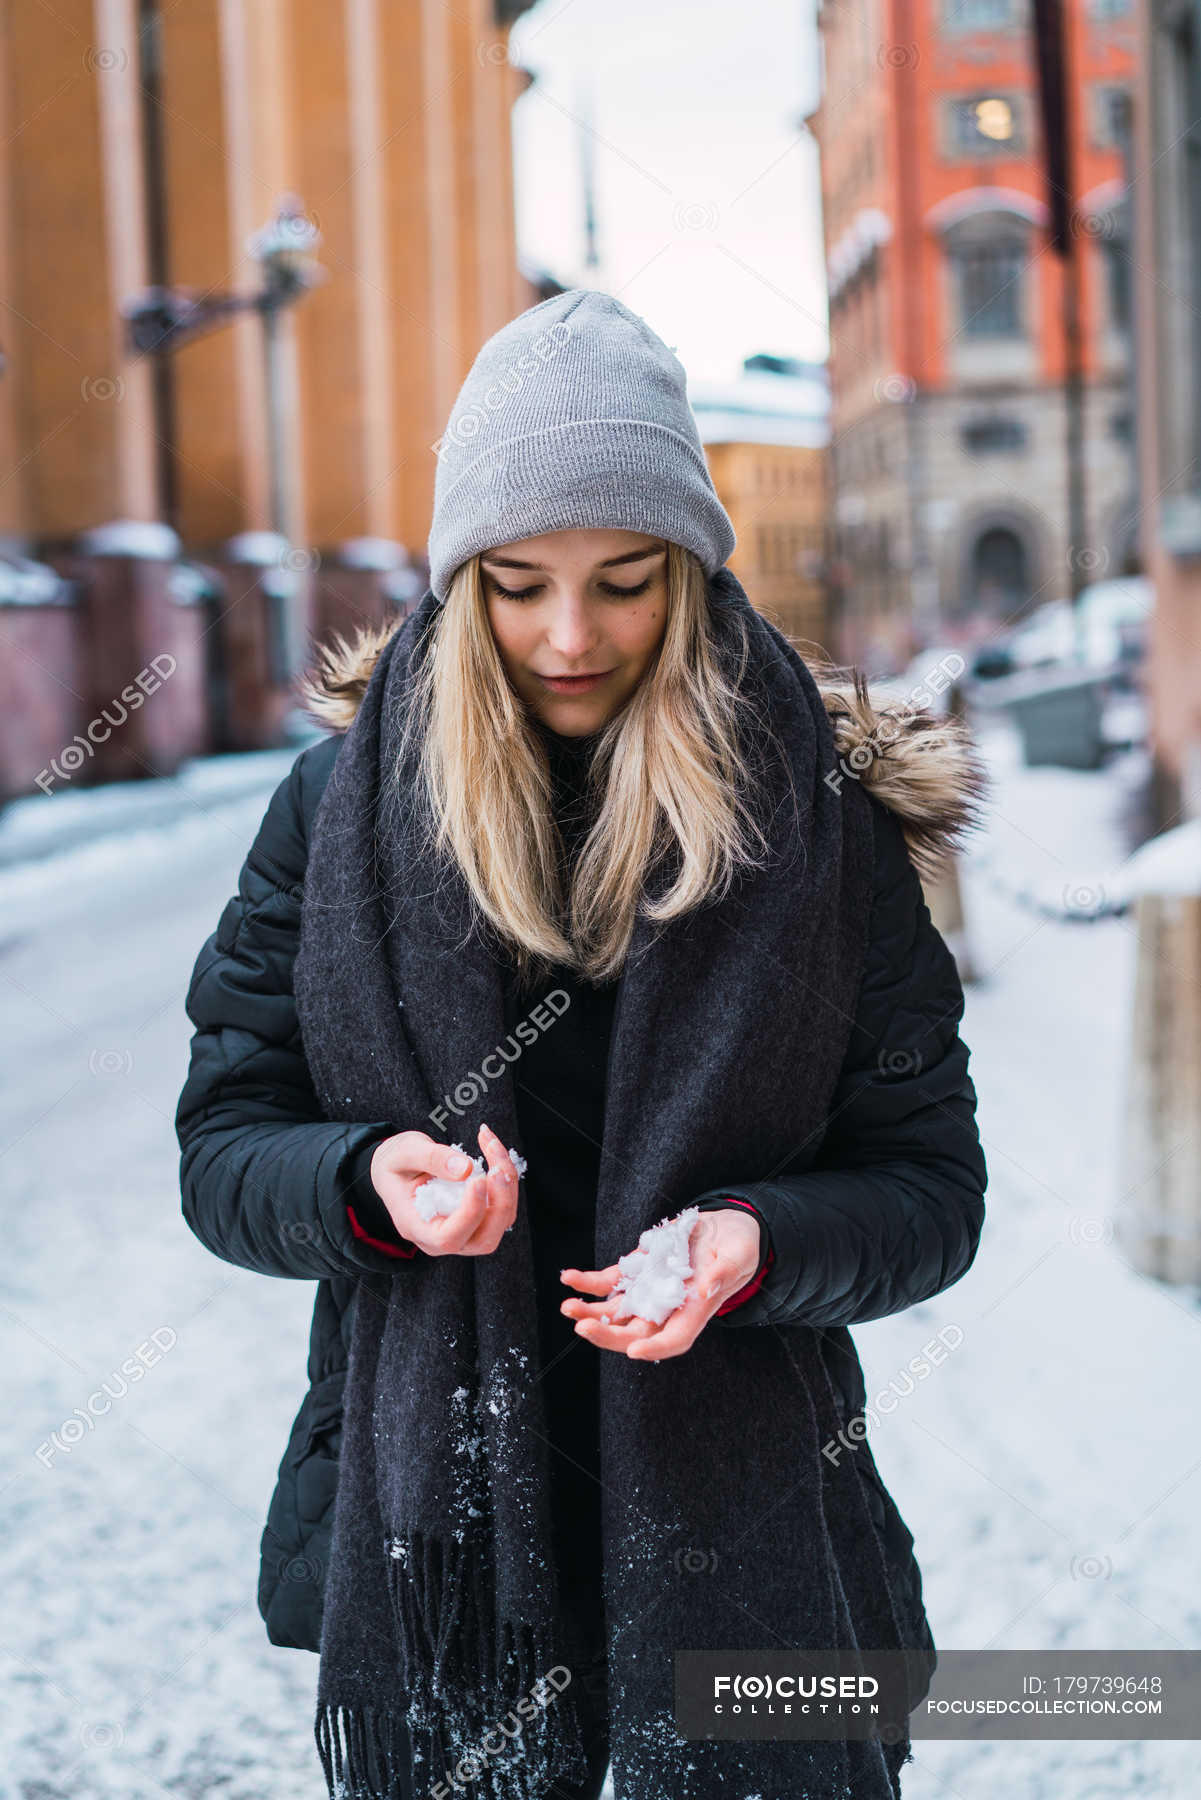 Портрет блондинки, смотрящей на снег в руках на зимней улице — Одежда, на открытом воздухе - Stock Photo